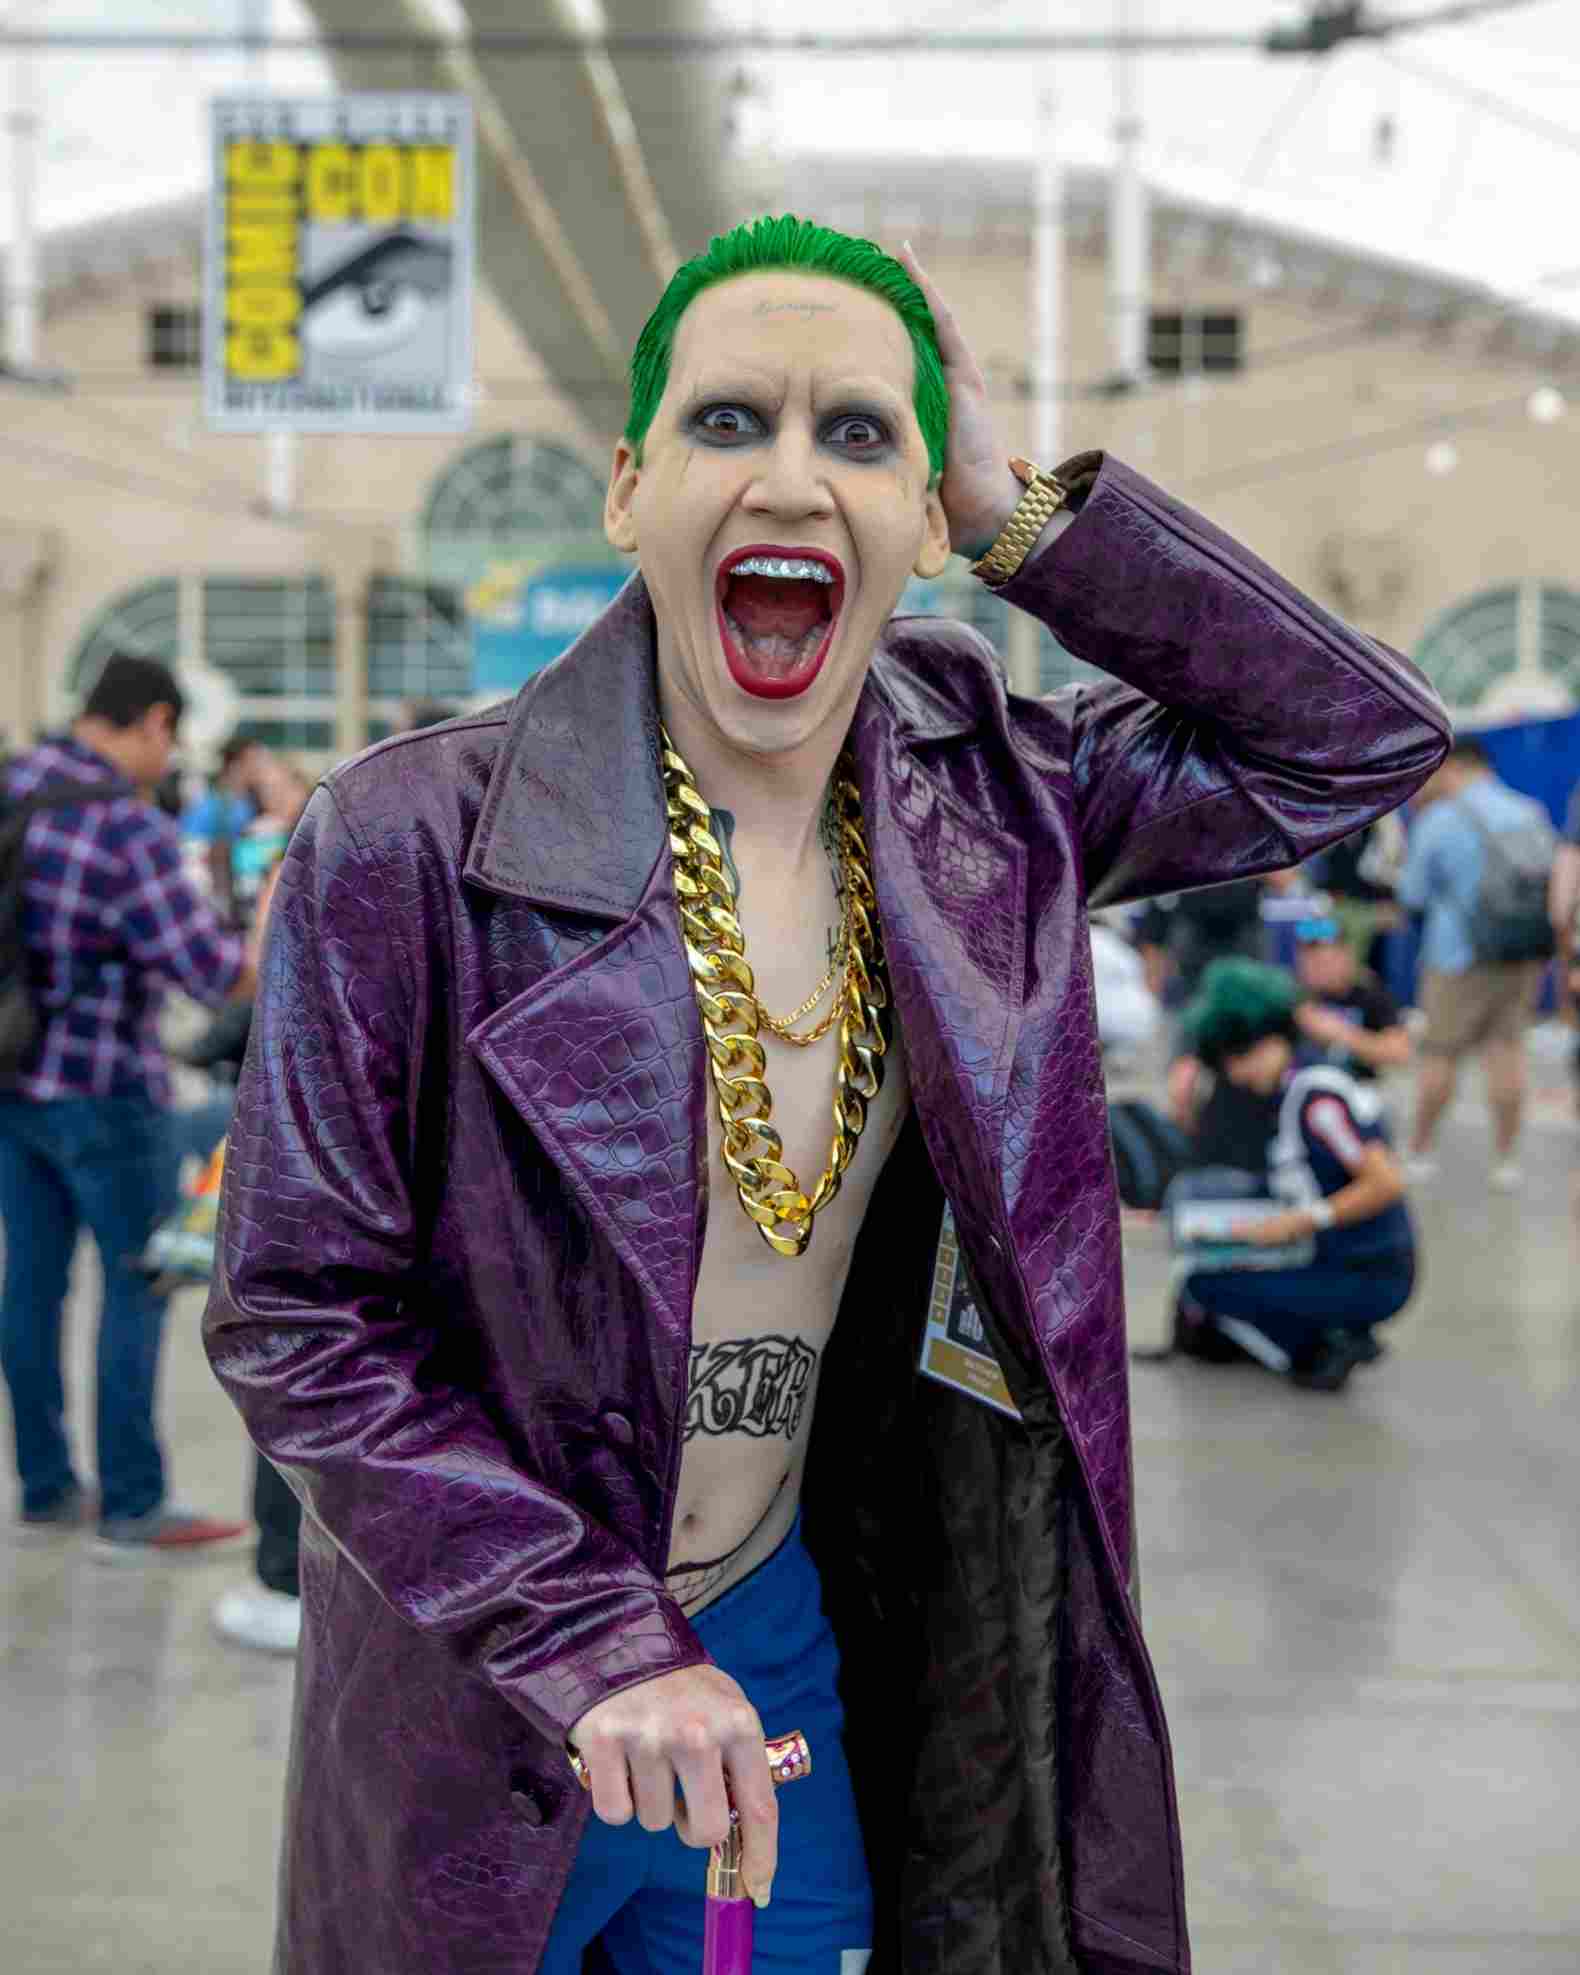 Joker costume for men's carnival makeup tips